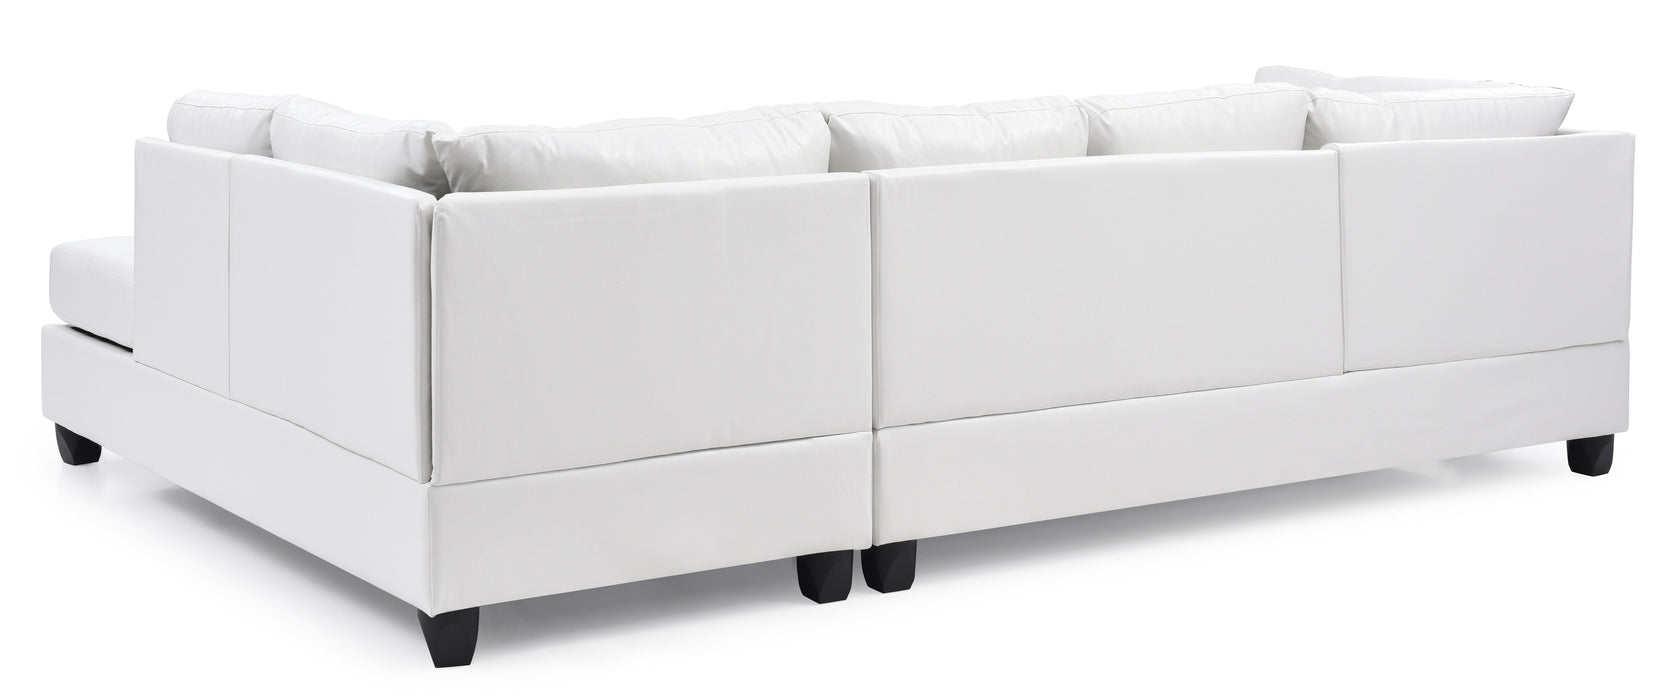 Glory Furniture Malone Sectional (3 Boxes), White - PU